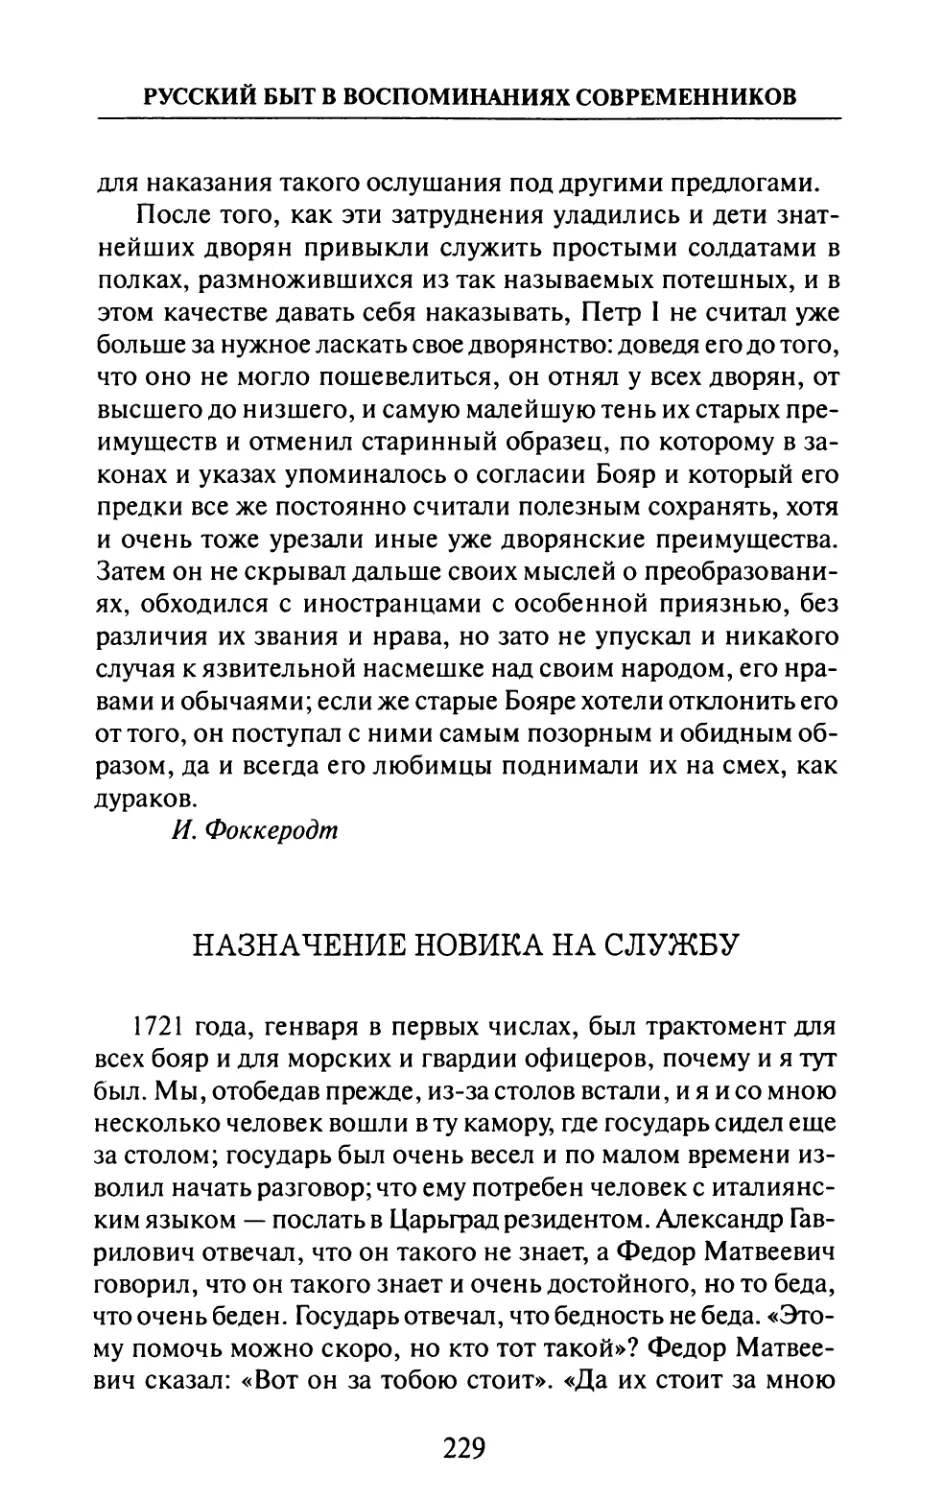 Назначение  новика  на  службу  —  И.  Неплюев.  «Записки»